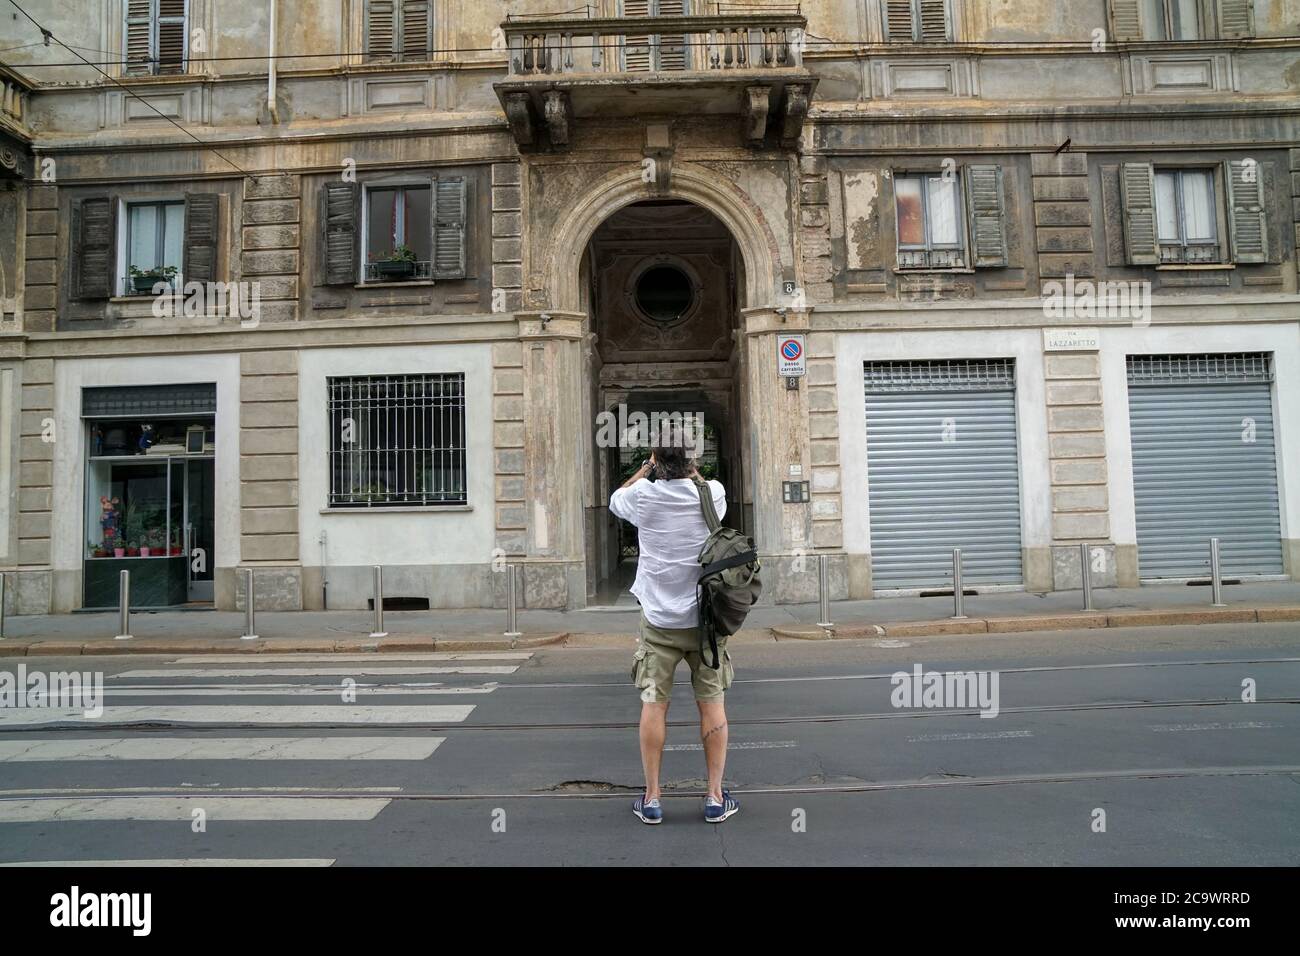 Mailand 07/15/2020: italienische Touristen machen ein Bild von einem alten Gebäude in der Lazzaretto Straße,61% der Italiener gehen in den Urlaub. 93 % bleiben in Italien Stockfoto